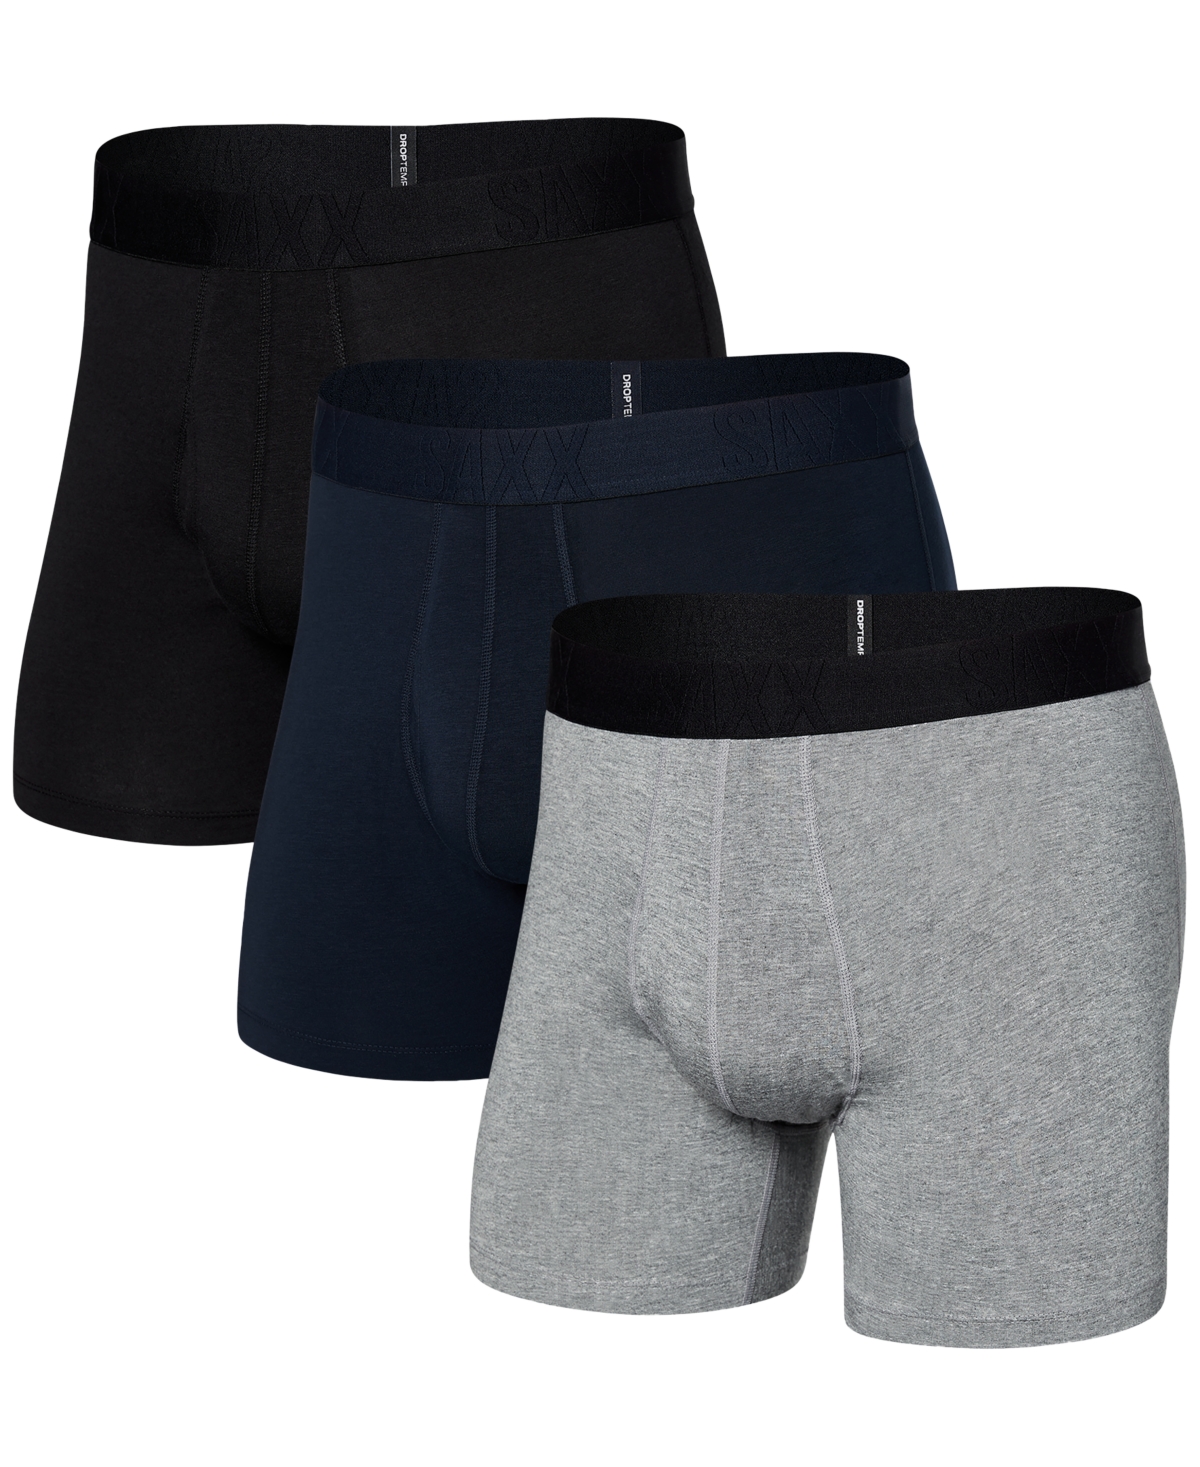 Men's DropTemp Cooling Cotton Slim Fit Boxer Briefs â 3PK - Dk Grey Hthr/dark Ink/blk